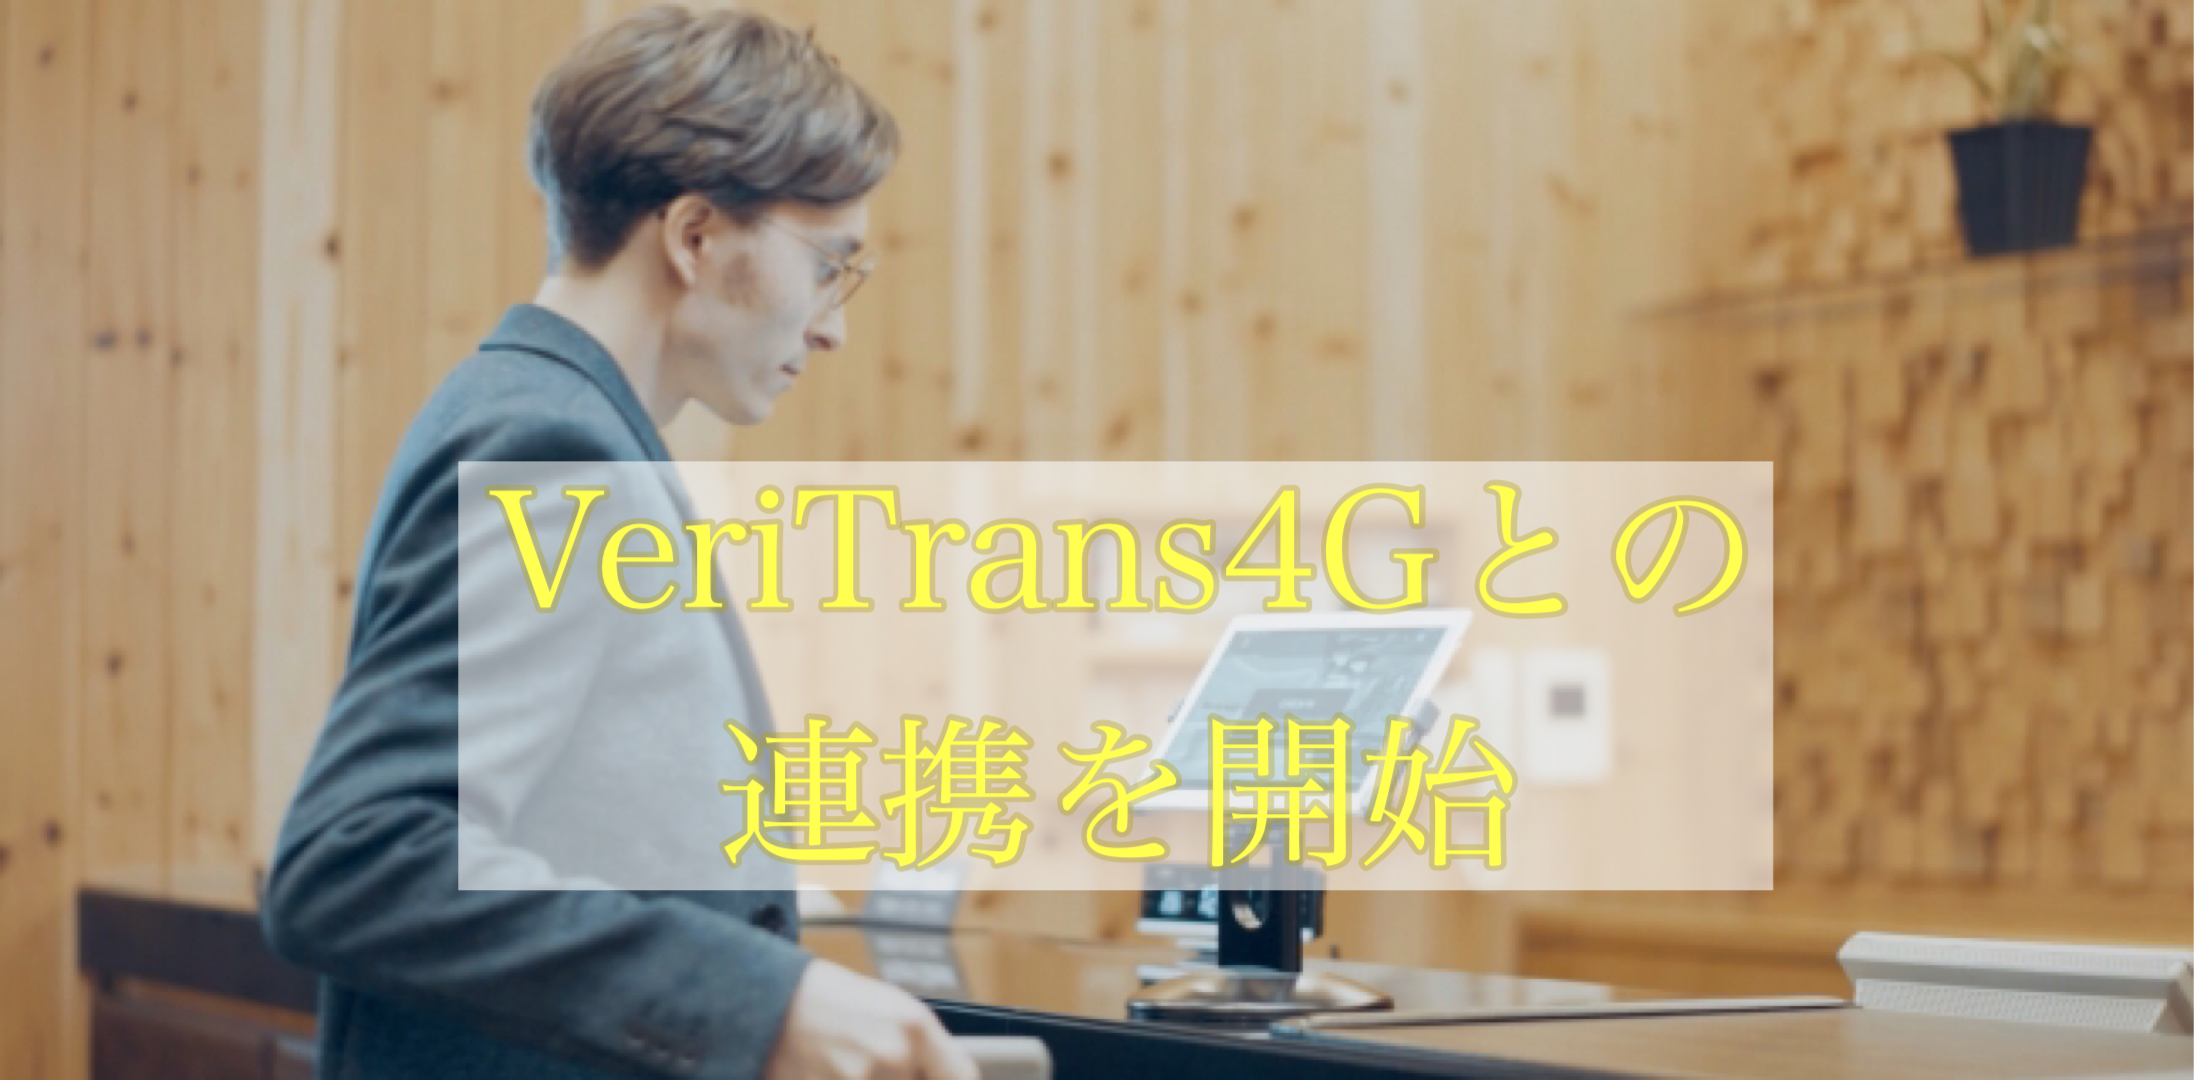 総合決済ソリューション「VeriTrans4G」との連携を開始